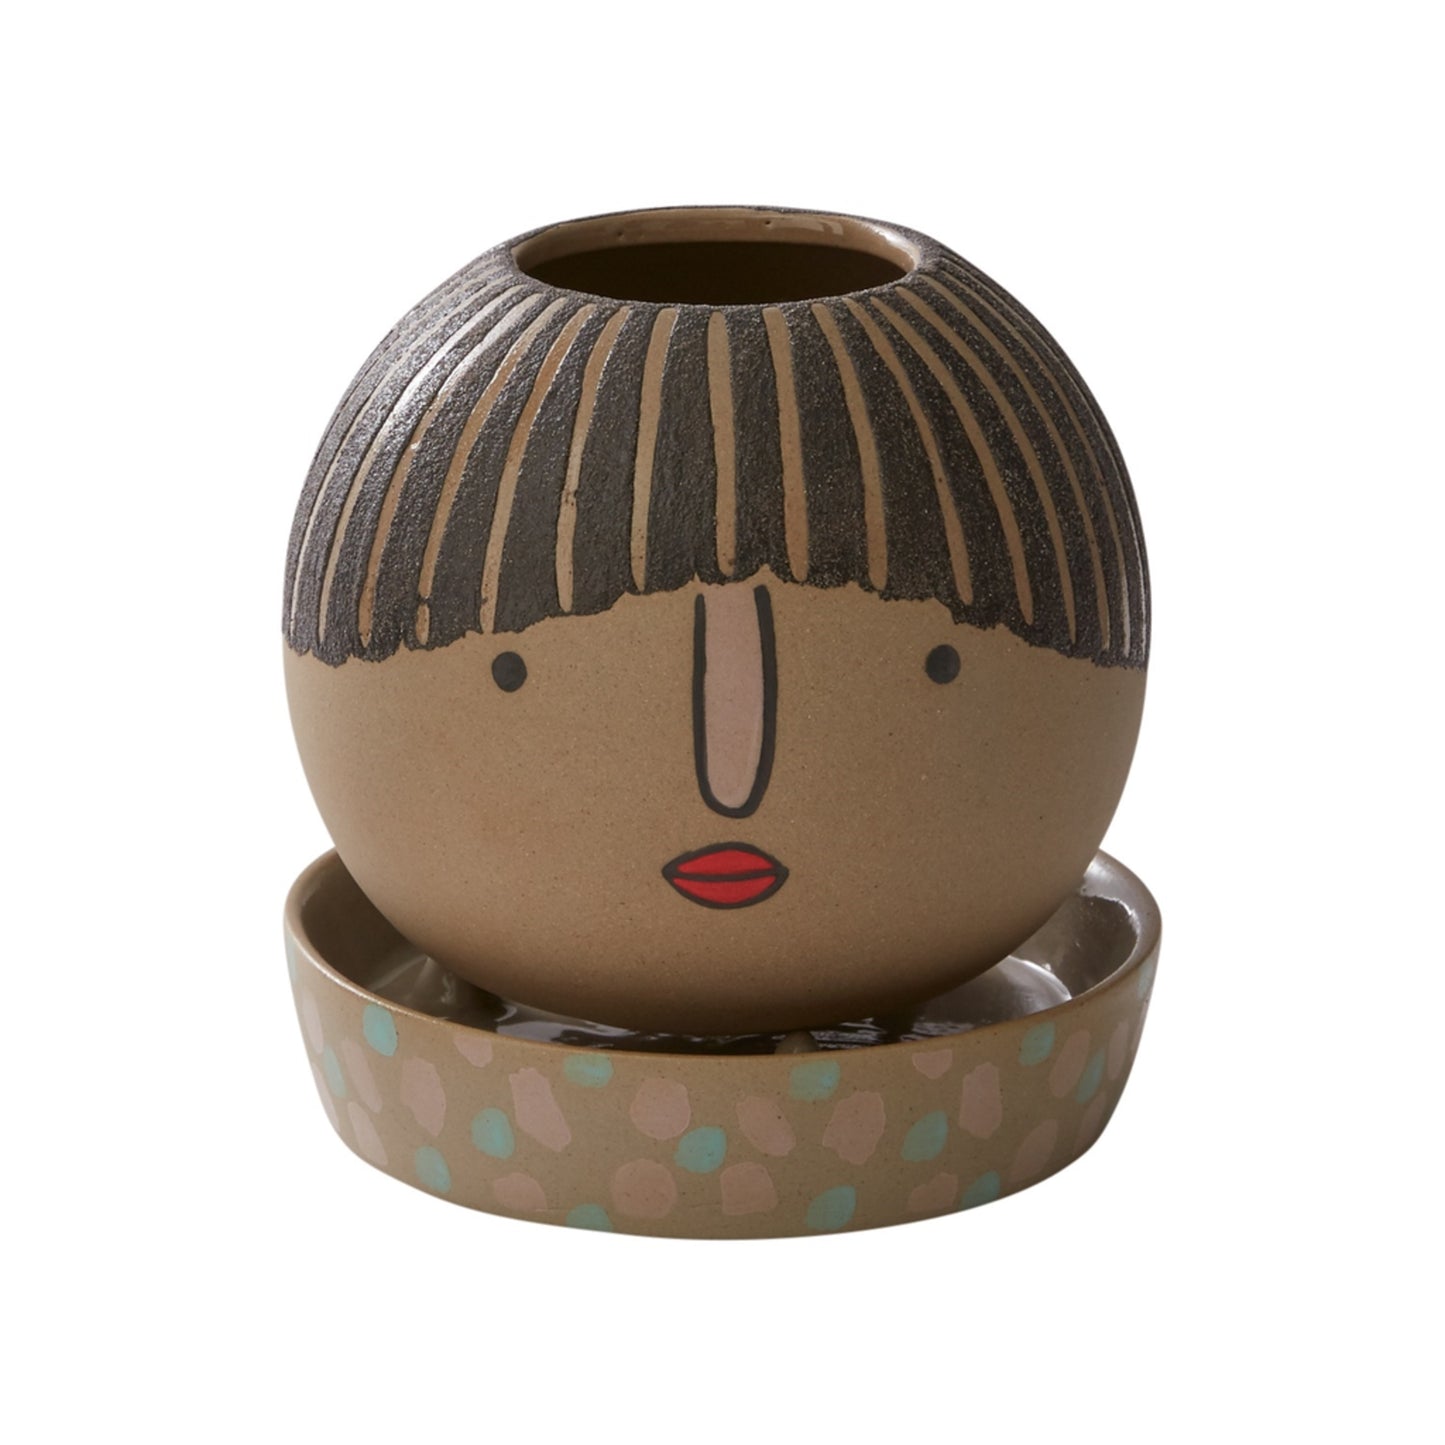 Etta Ceramic Round Pot